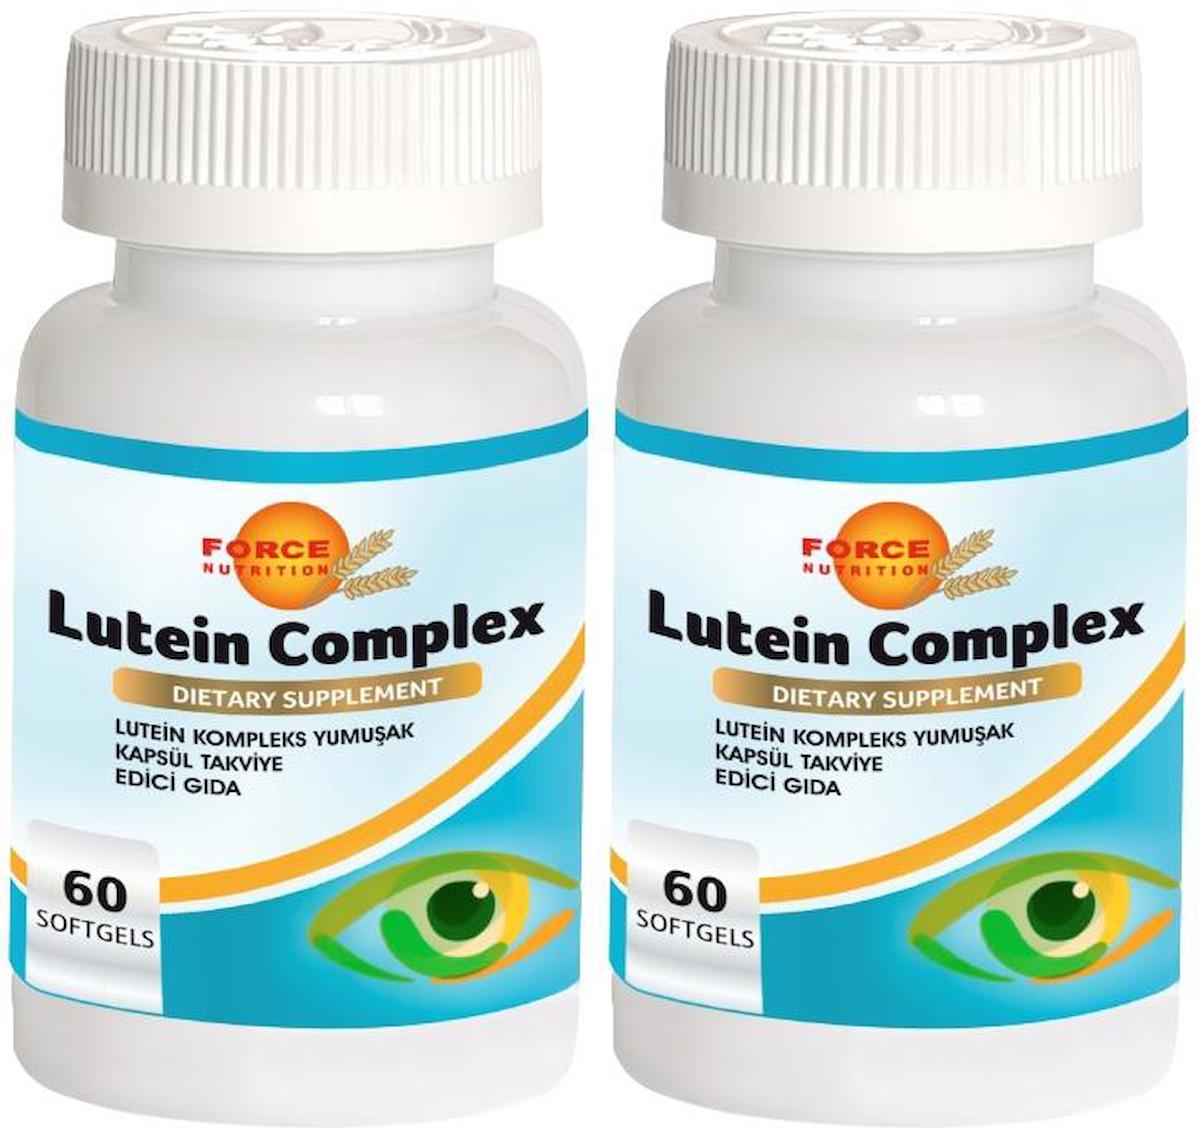 Force Nutrition Lutein Complex Aromasız Unisex Vitamin 2x60 Kapsül